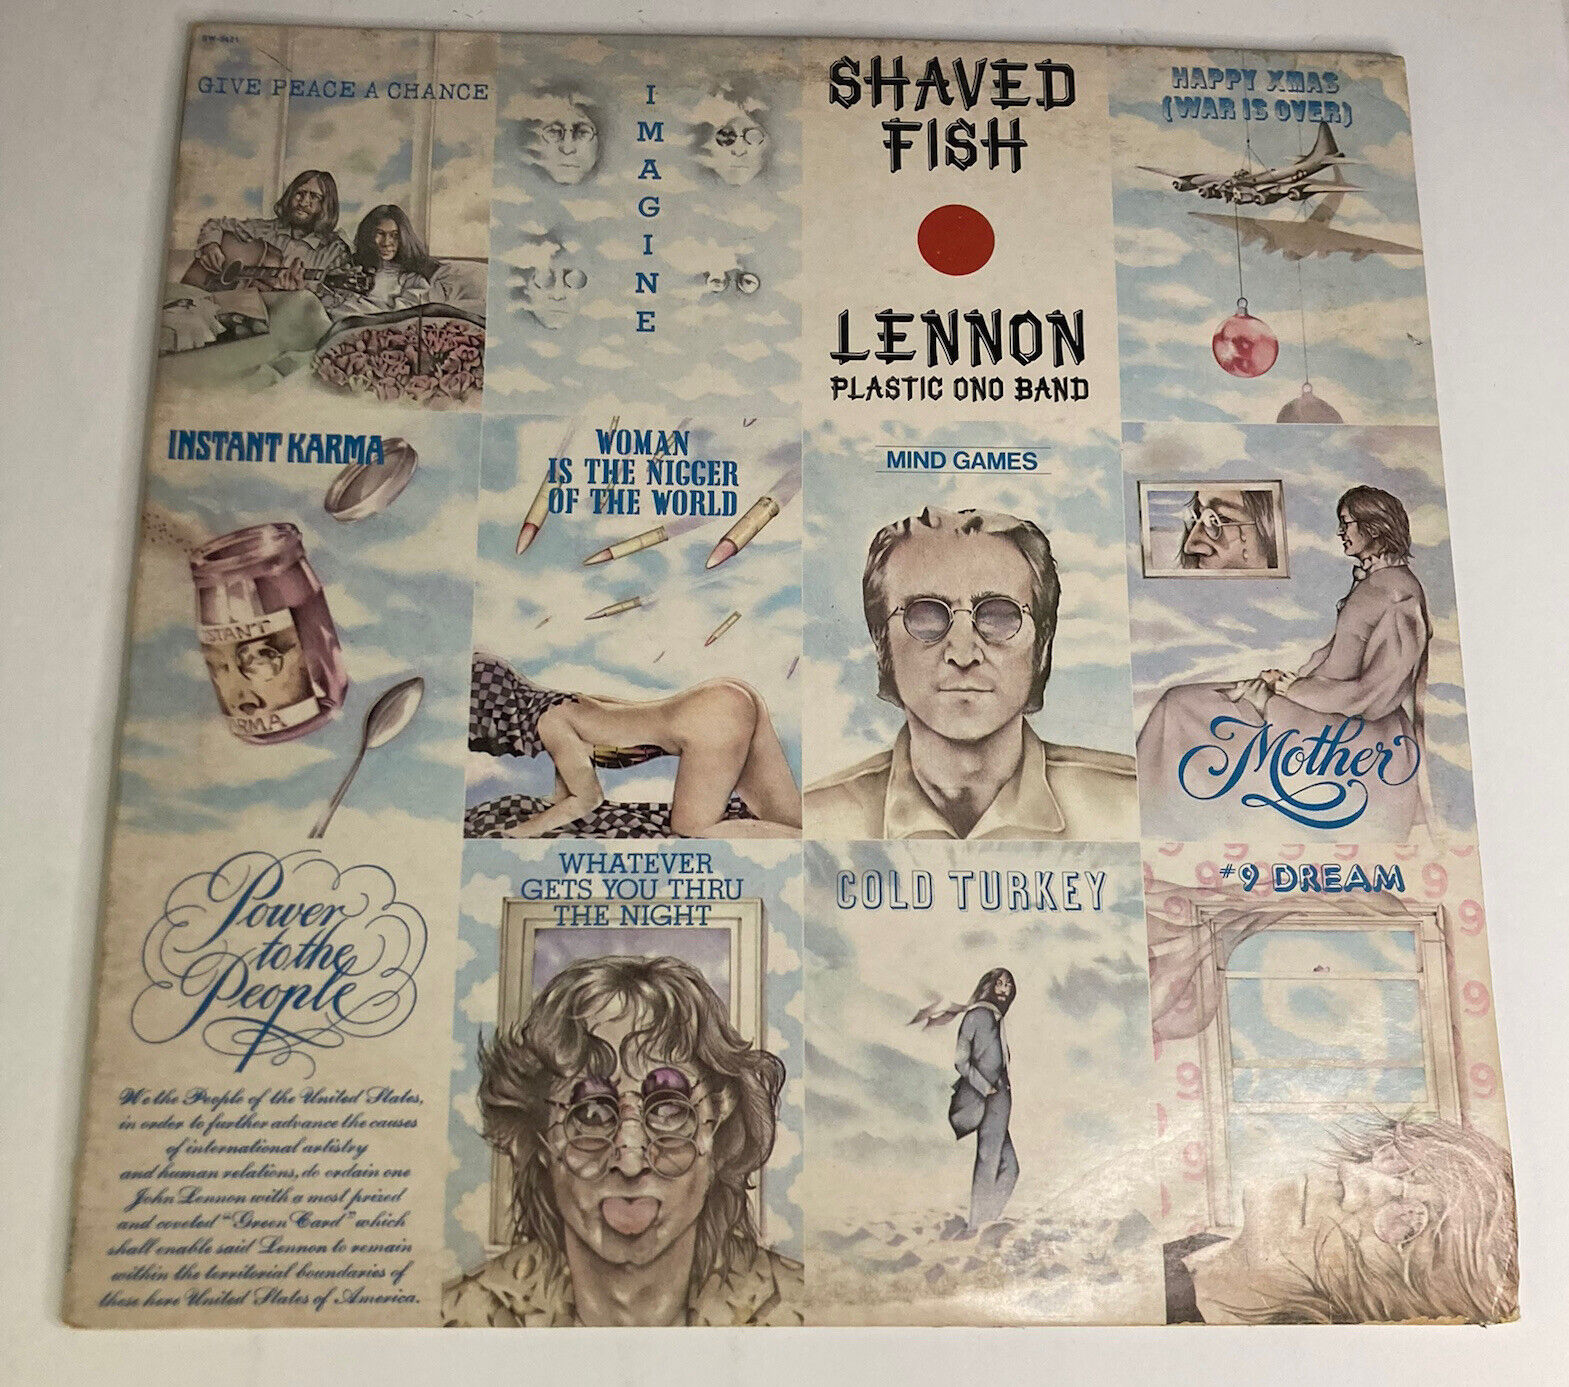 Vtg 1975 John Lennon Plastic Ono Band “Shaved Fish” 12” LP Capitol Records